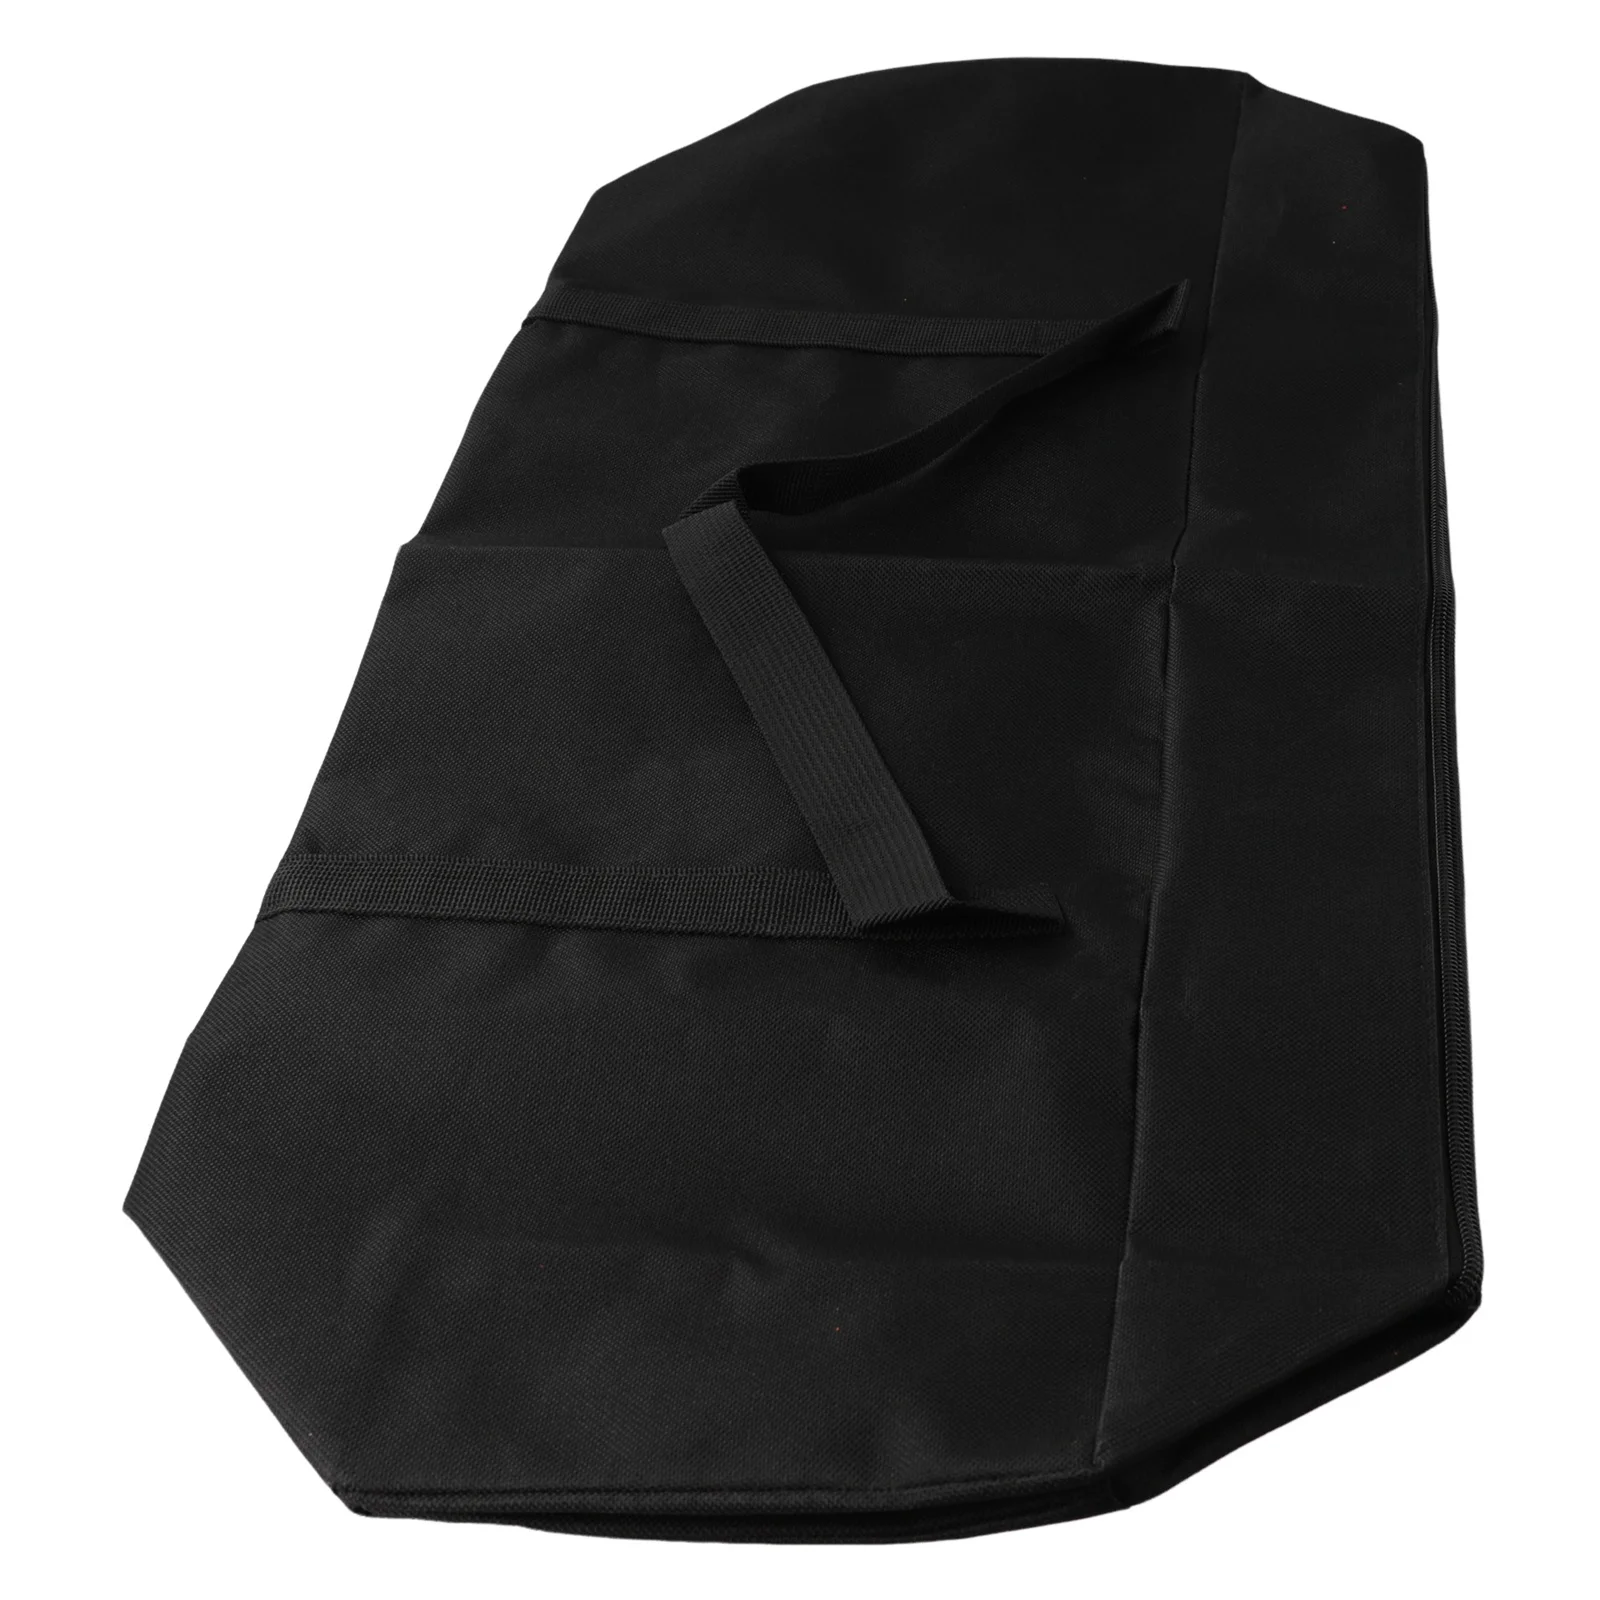 Держите штатив в безопасности и организованности с помощью этой портативной сумки-футляра для хранения, подходящей для фотосъемки с микрофоном